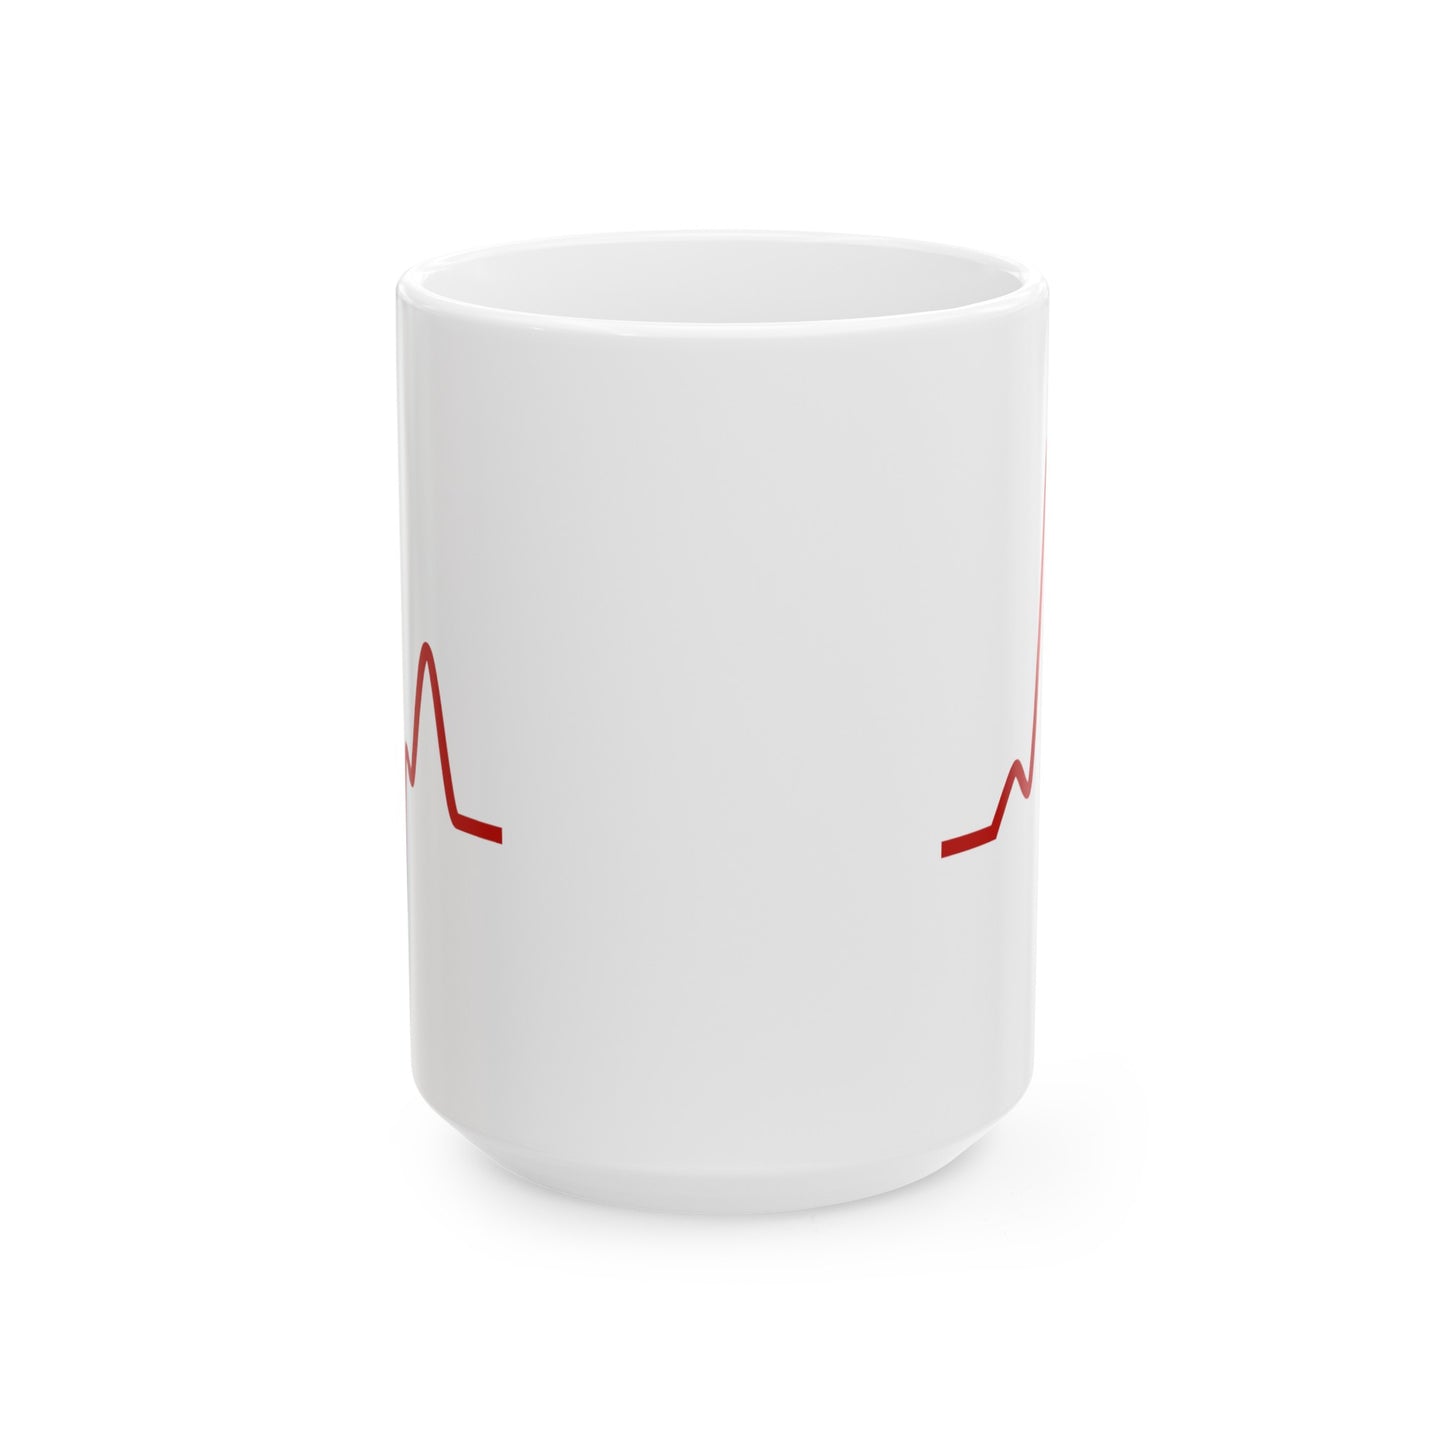 Sine Wave Coffee Mug - Double Sided White Ceramic 15oz by TheGlassyLass.com